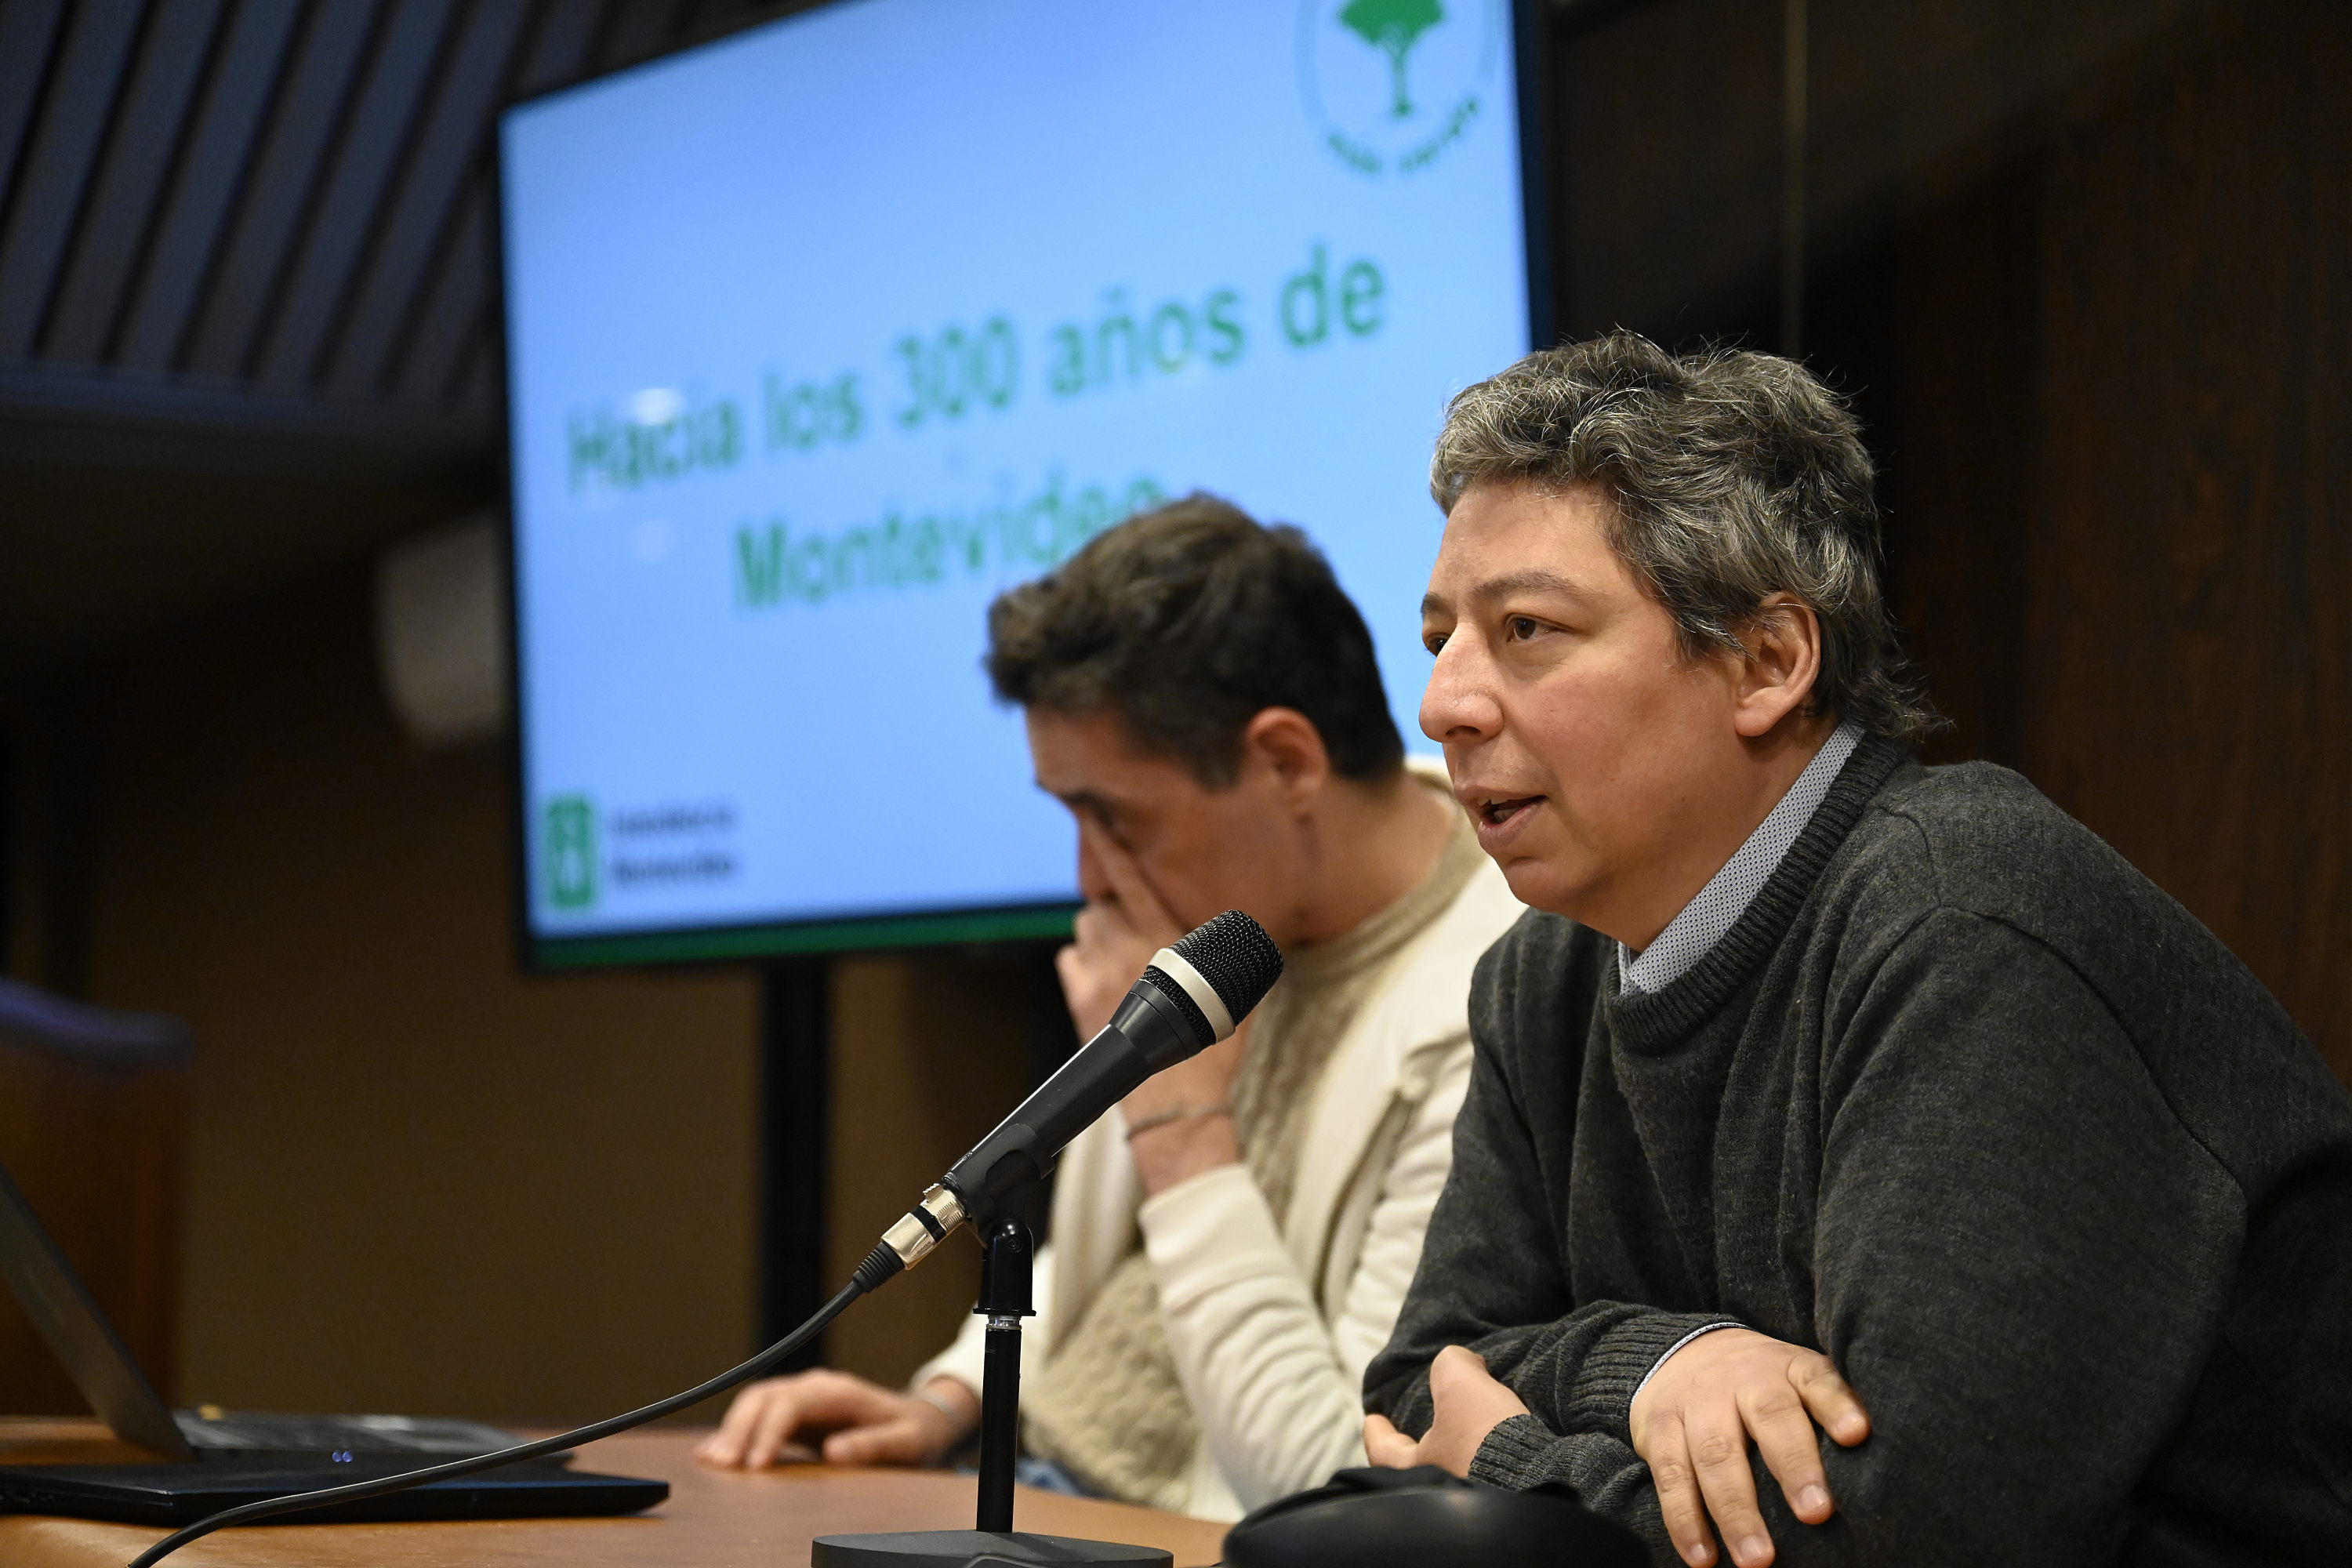 Jornada de planificación de acciones por los 300 años de Montevideo